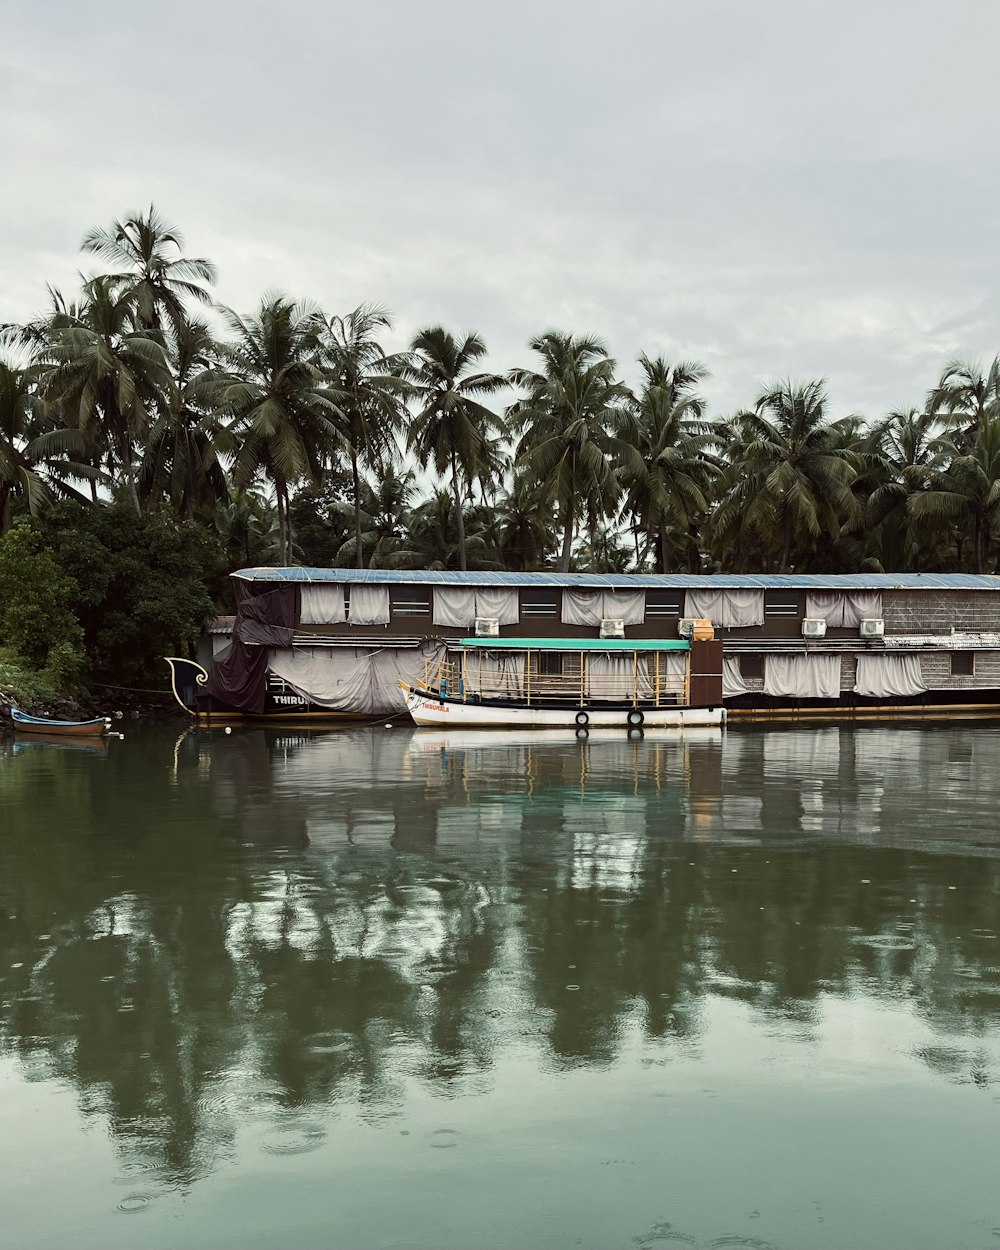 Ein Hausboot parkt auf dem Wasser mit Palmen im Hintergrund